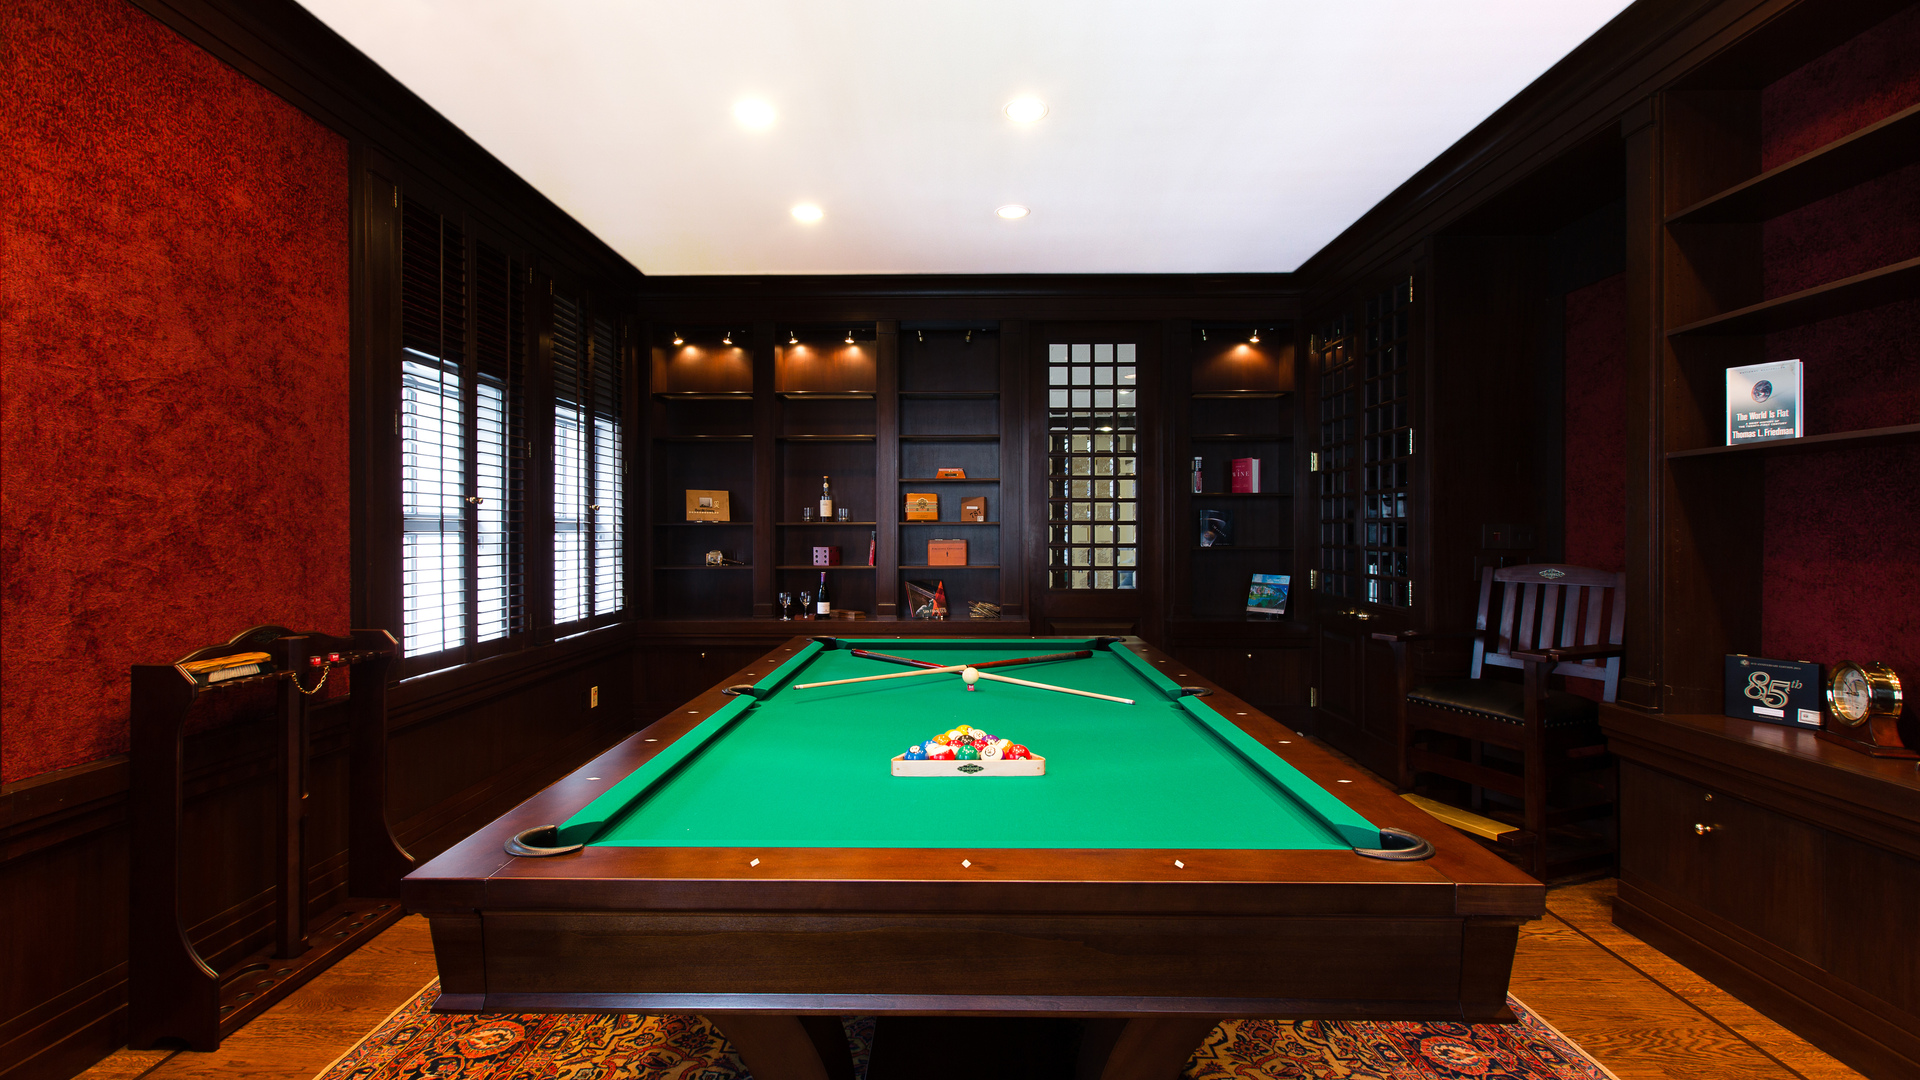 Room Billiards Interior Pool Table 1920x1080